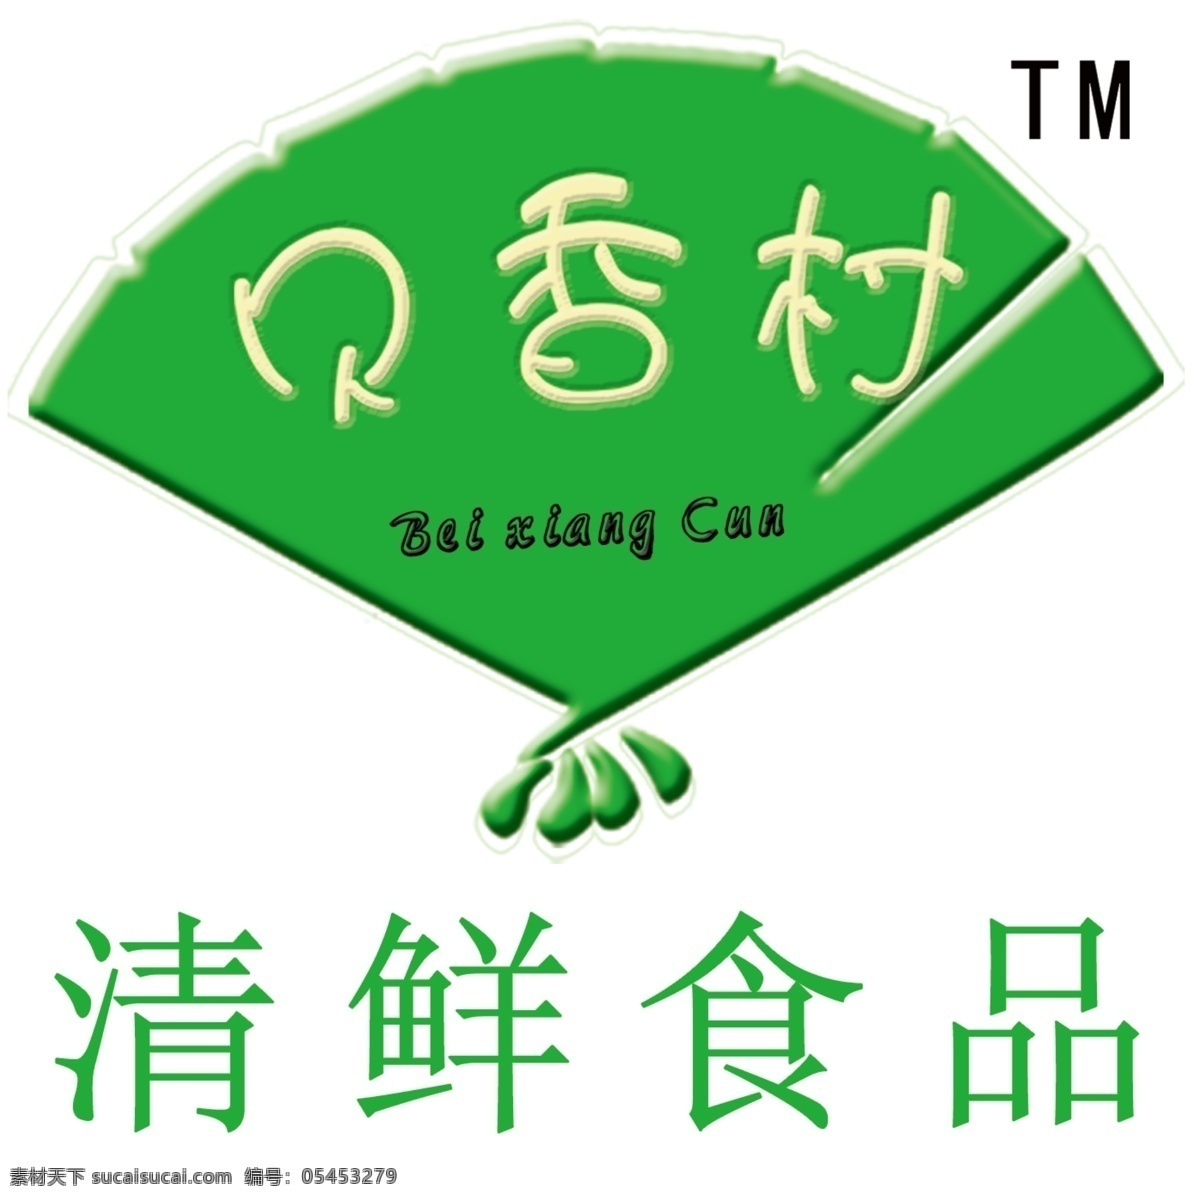 贝 香 村 logo 广告设计模板 画册设计 源文件 清鲜 食品 有限责任 公司 其他画册封面